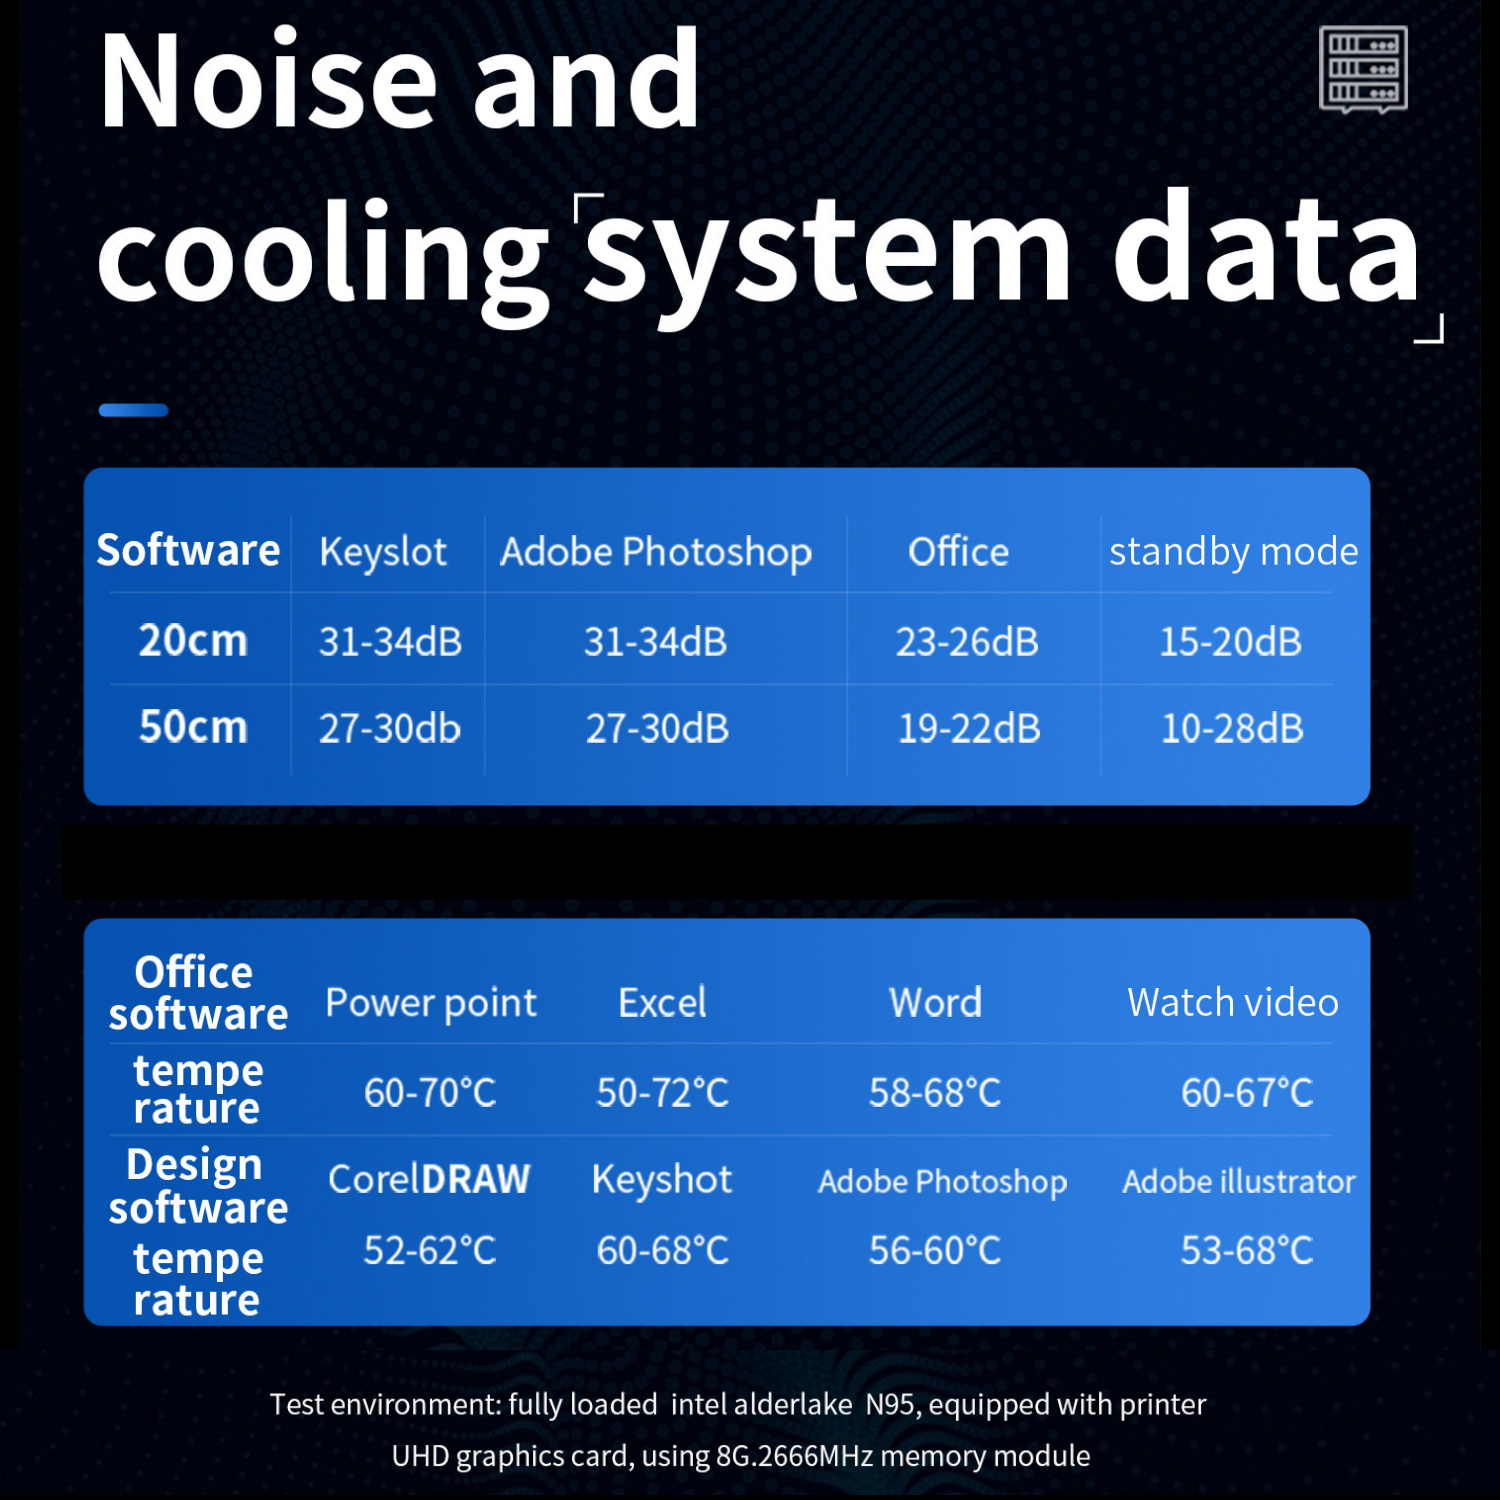 Máy tính để bàn – Máy chủ Server – Mini PC – Intel NUC N95, gen 12th 2023, up to 3.4GHz ( Hàng chính hãng)